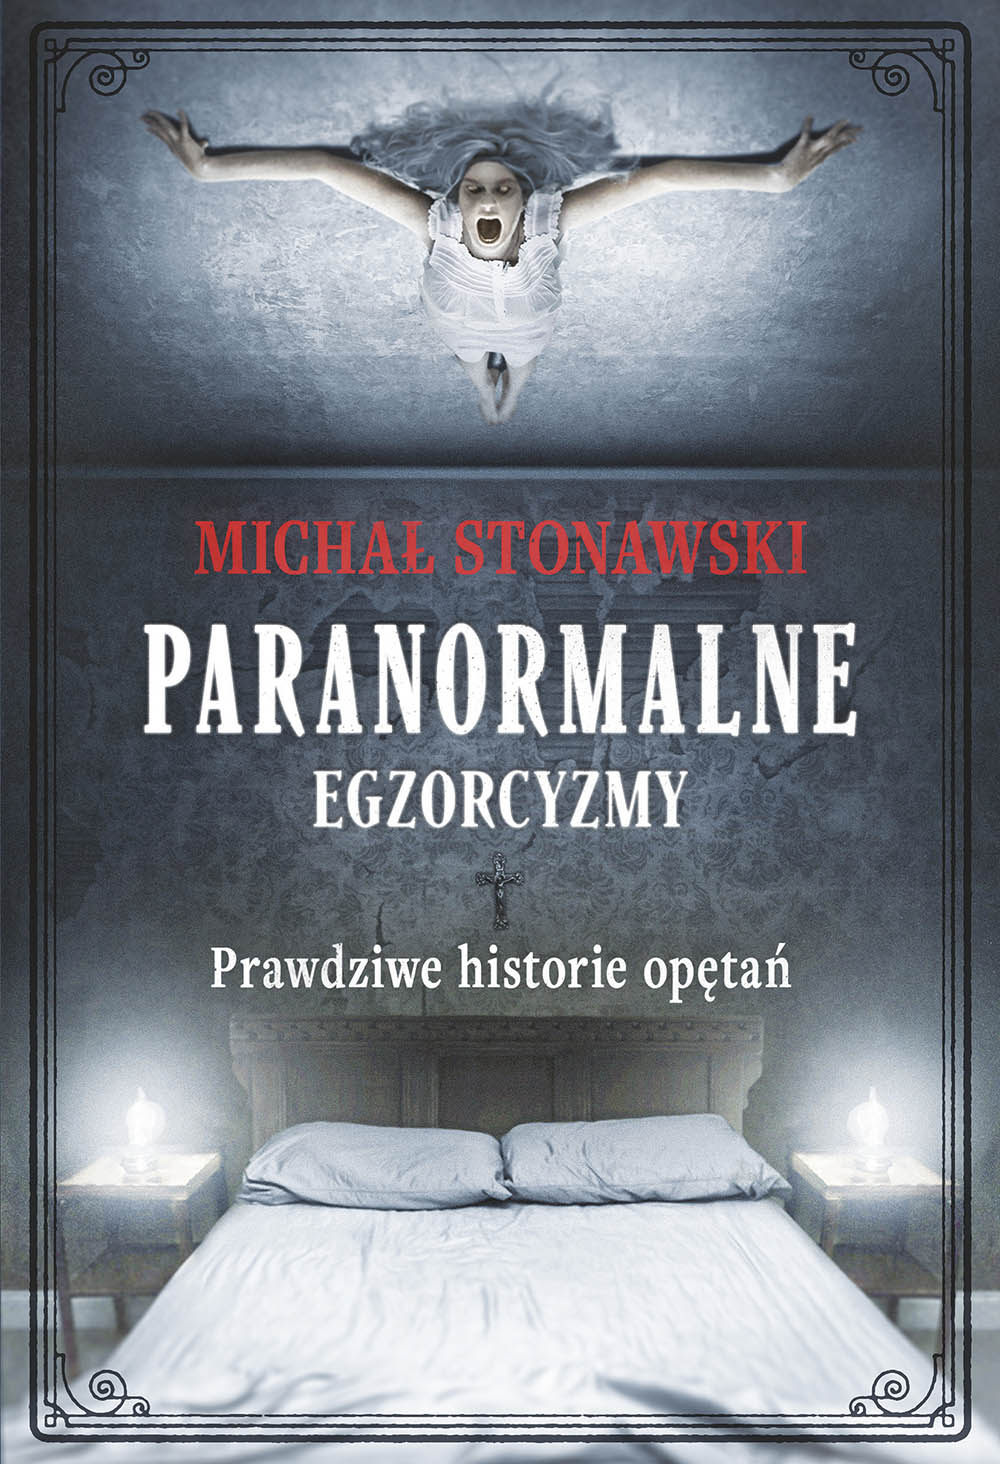 Paranormalne egzorcyzmy. Prawdziwe historie opętań.